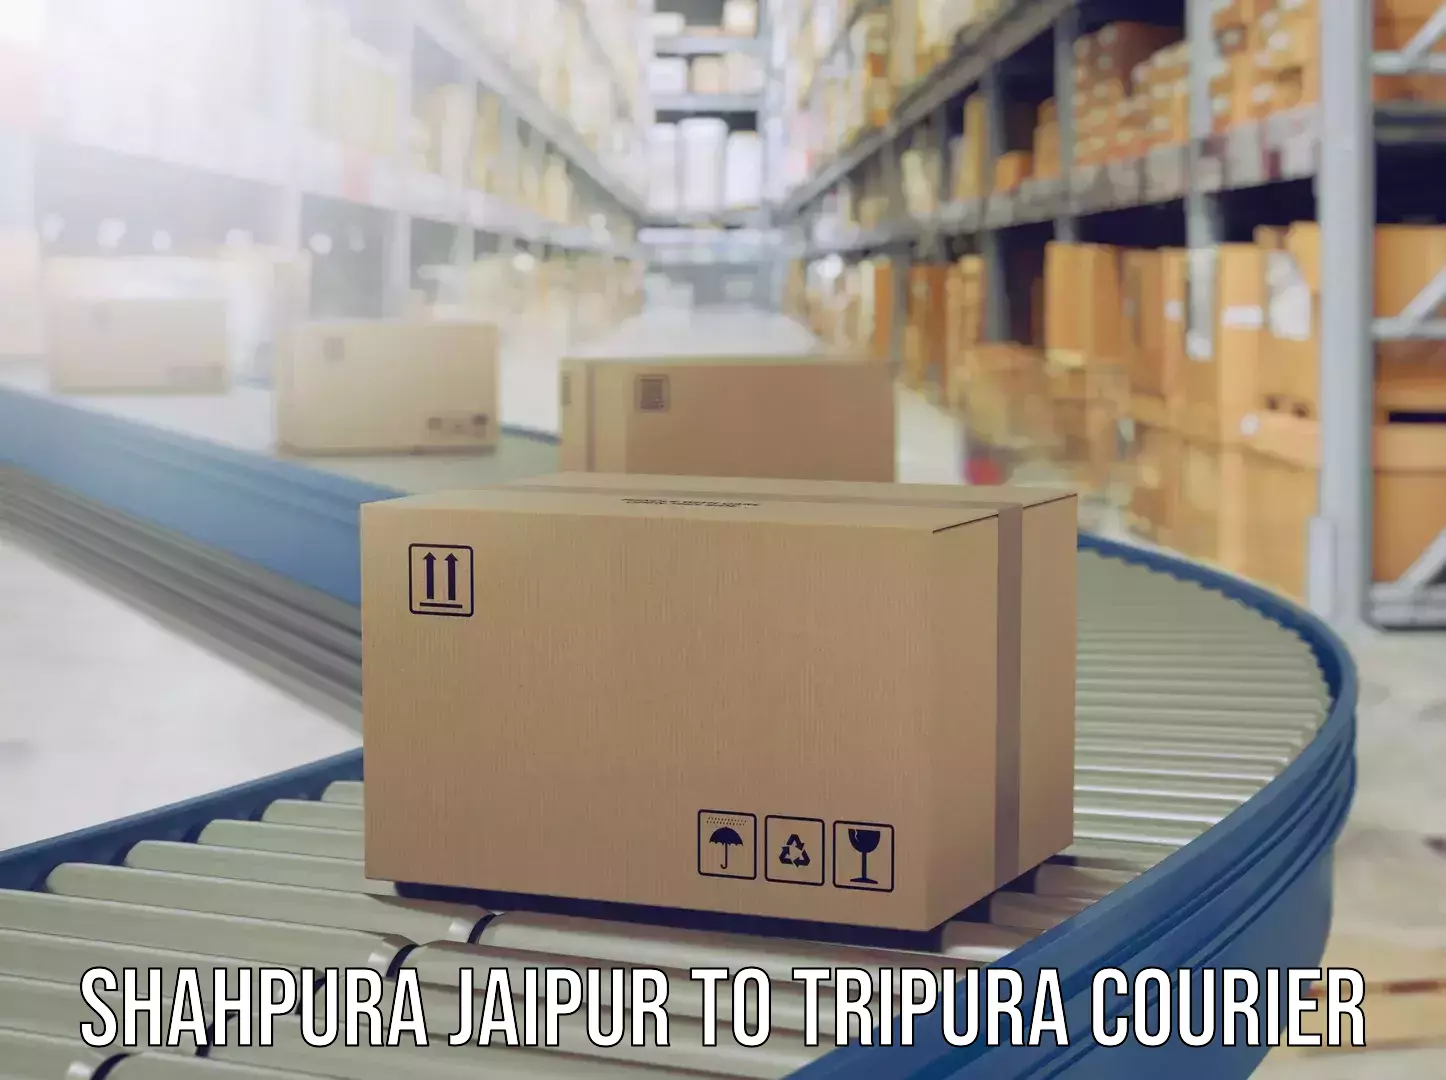 Urgent luggage shipment Shahpura Jaipur to Tripura